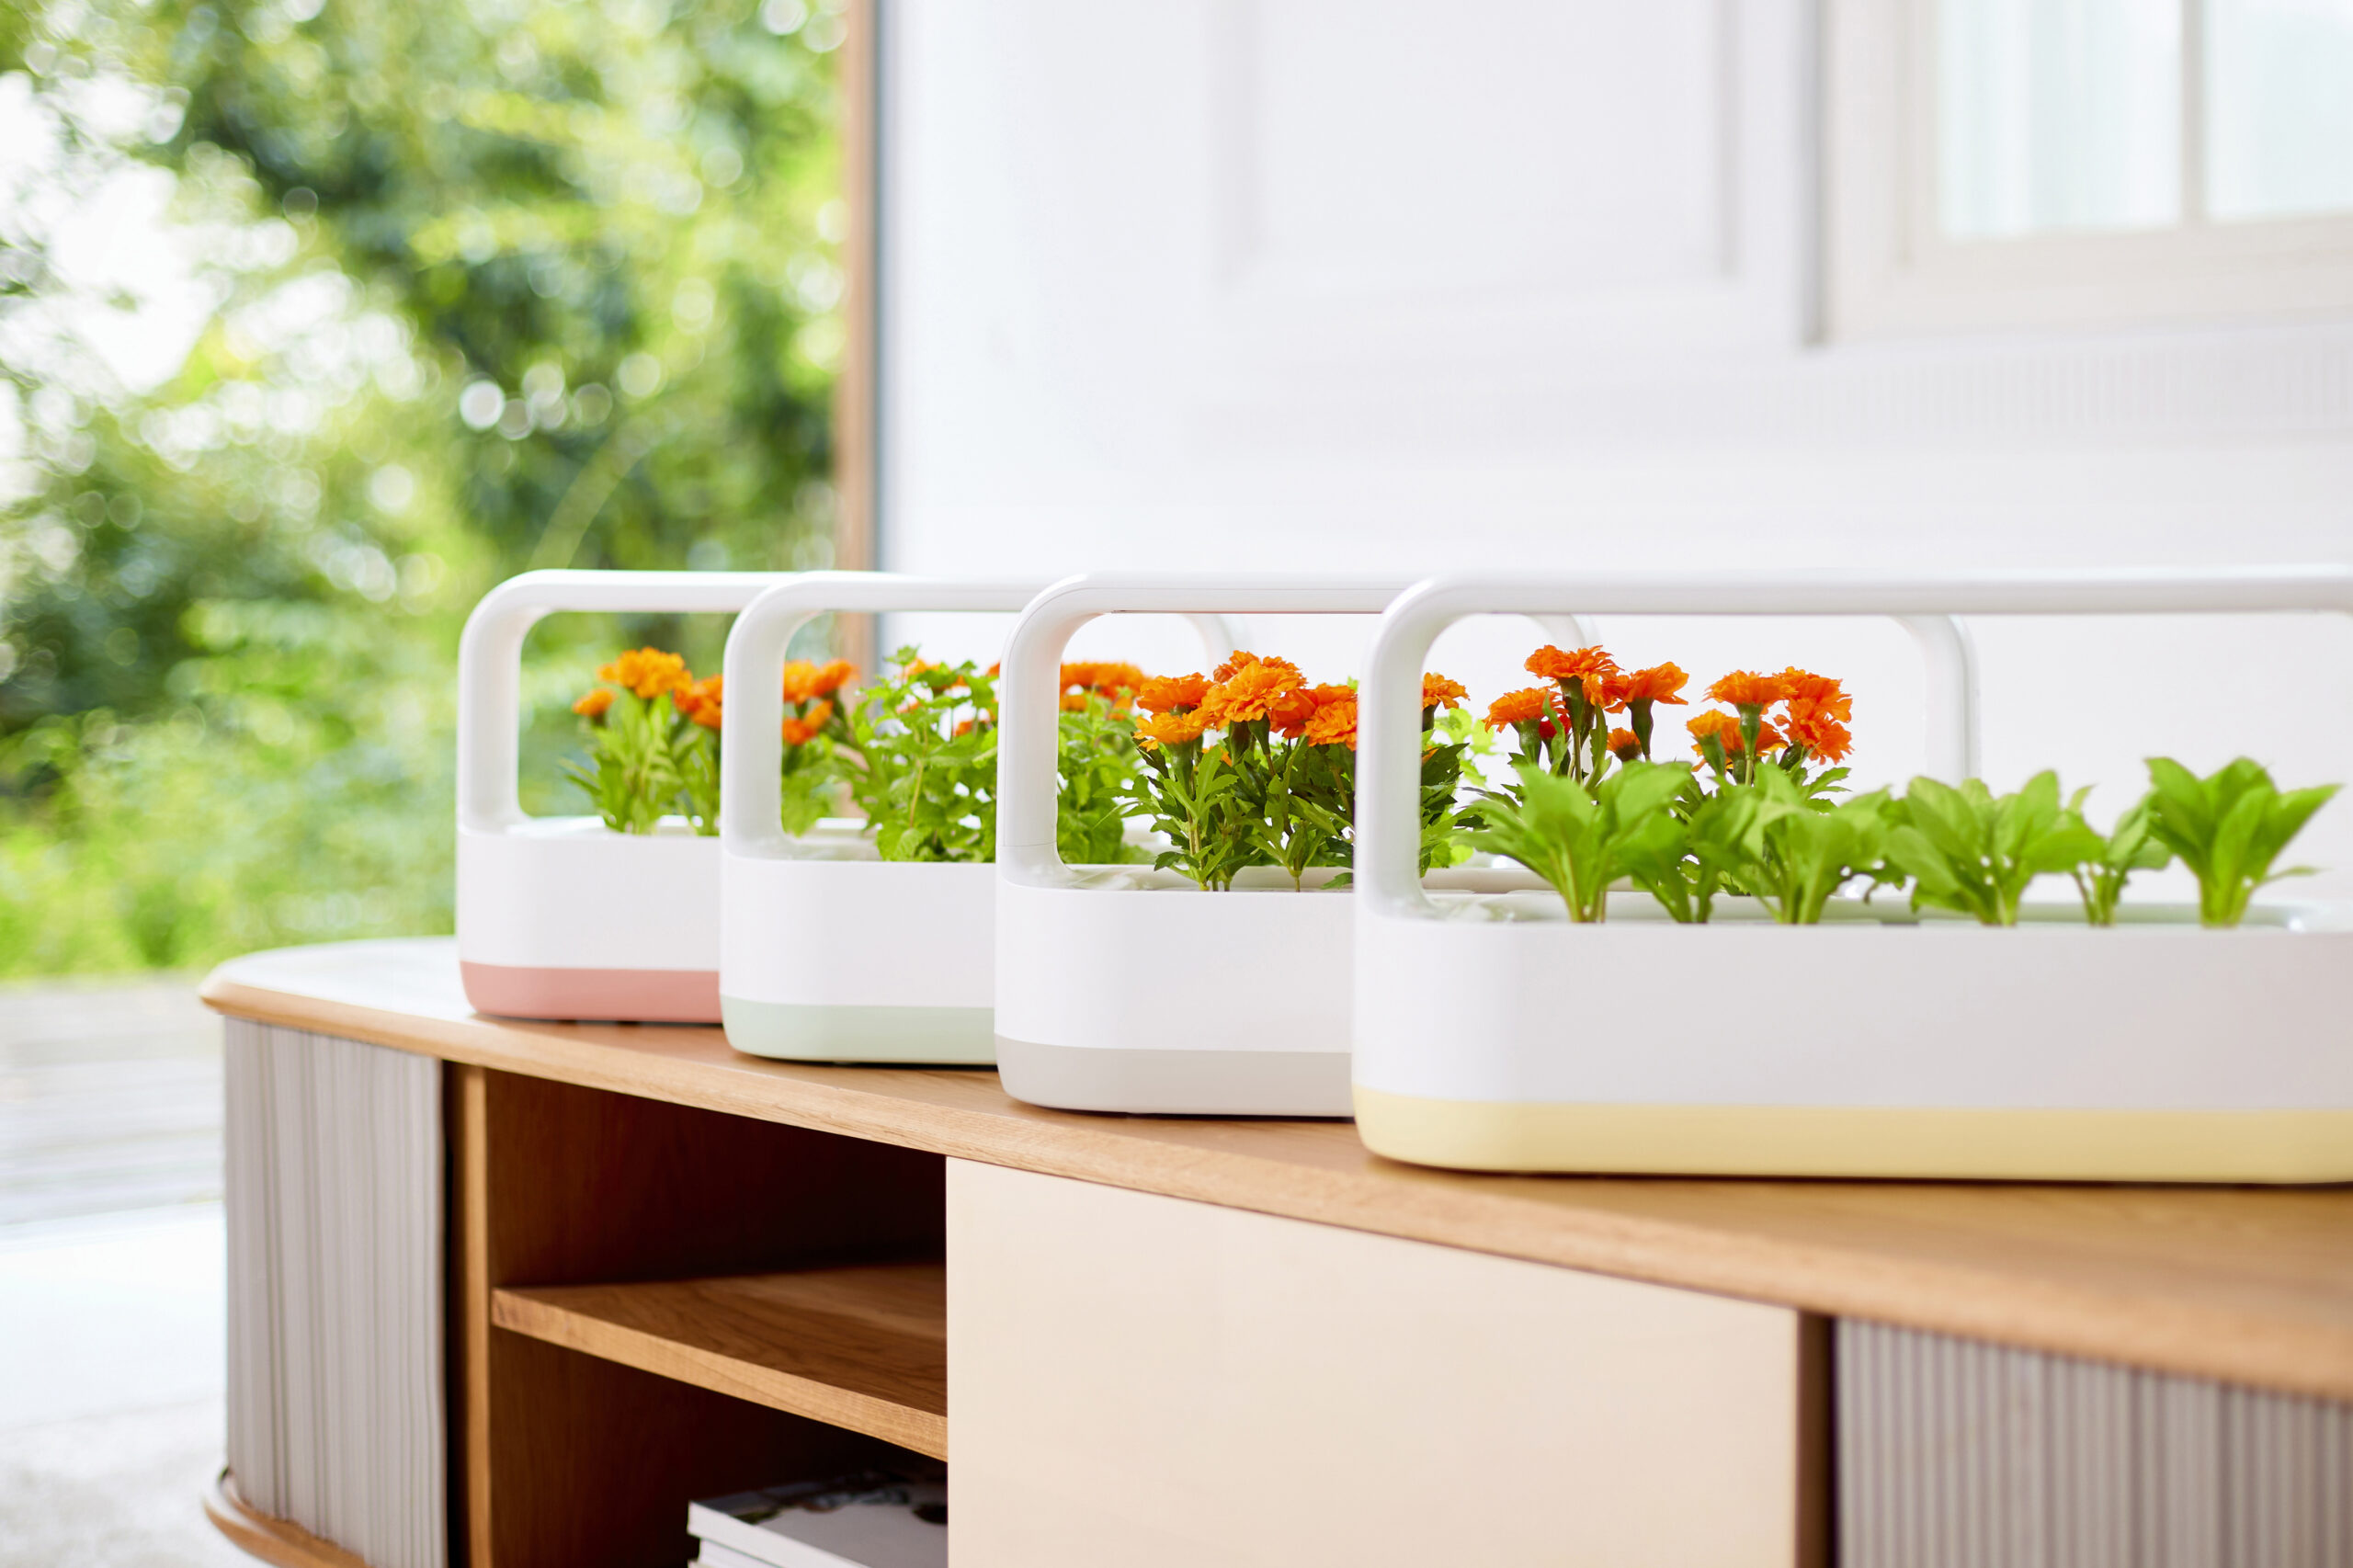 LG tiiun mini is growing herbs and marigolds